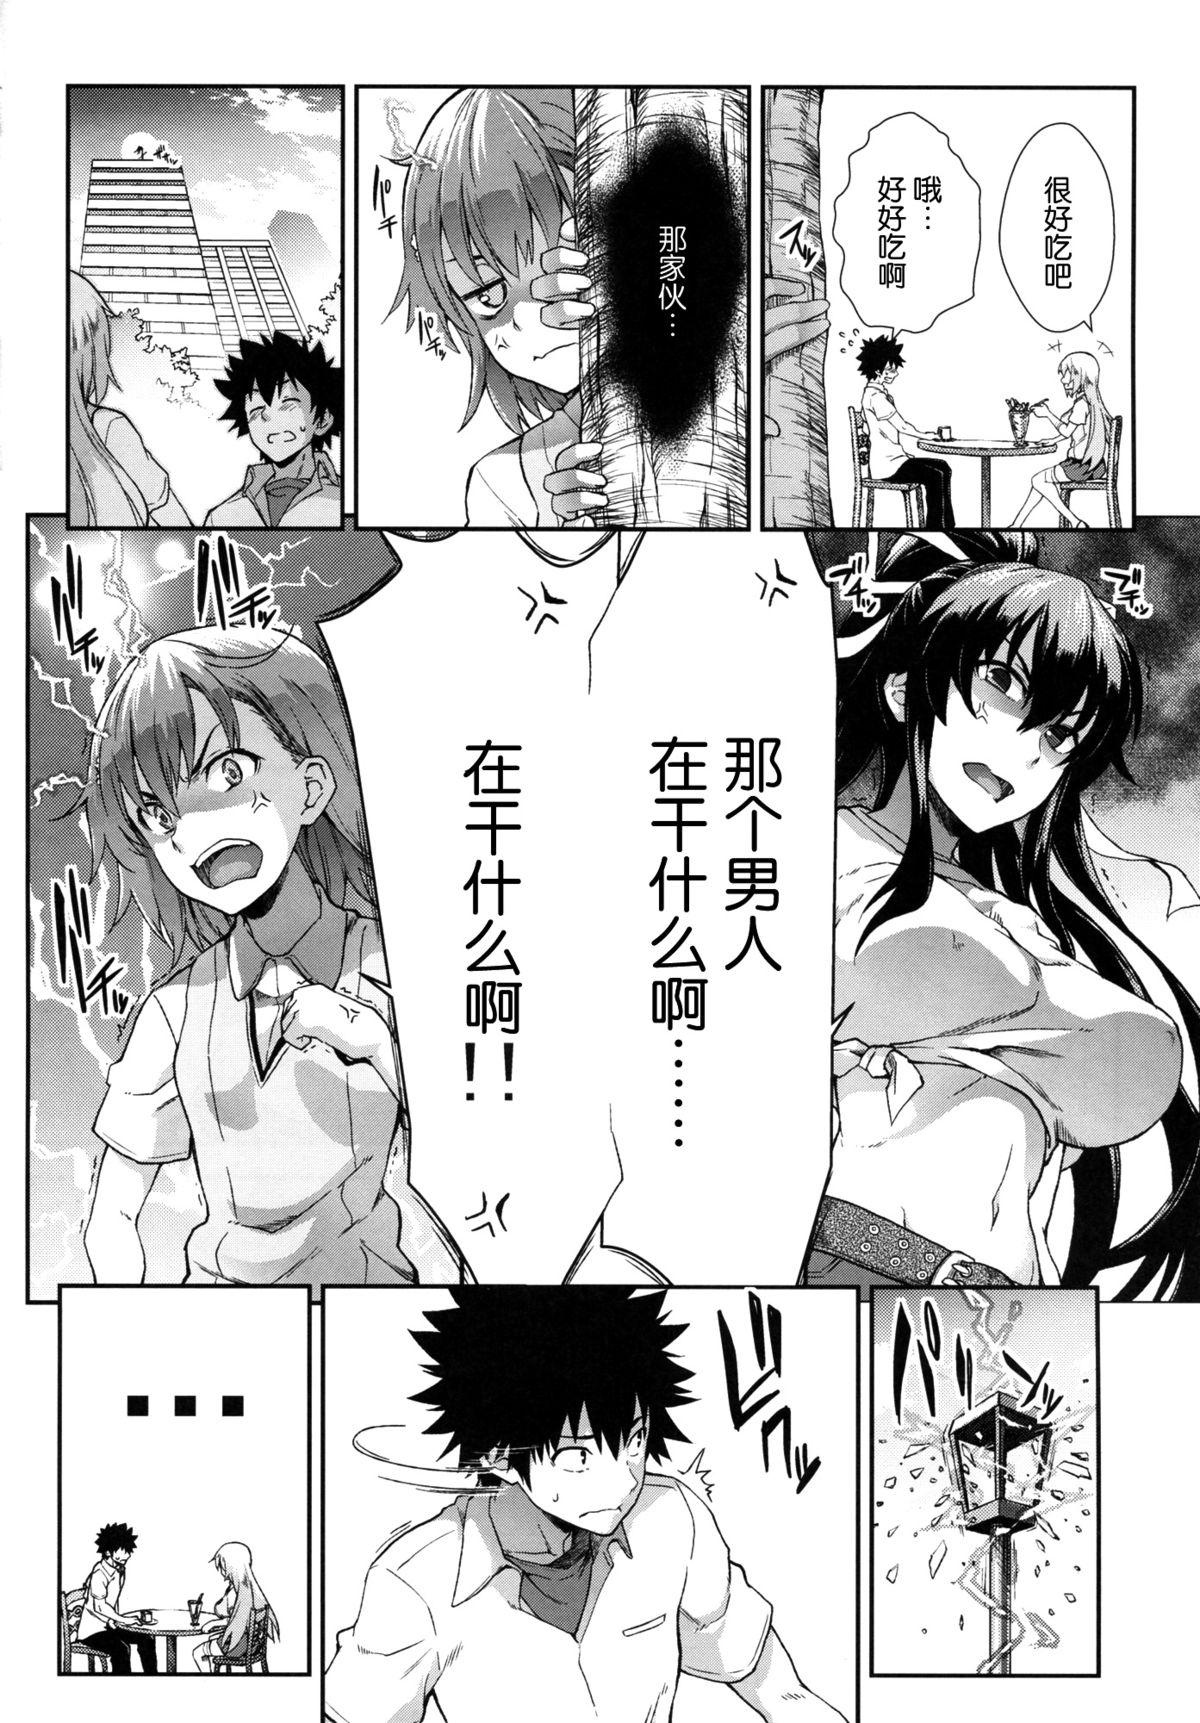 4some Houshoku Houen - Toaru majutsu no index Mamada - Page 4